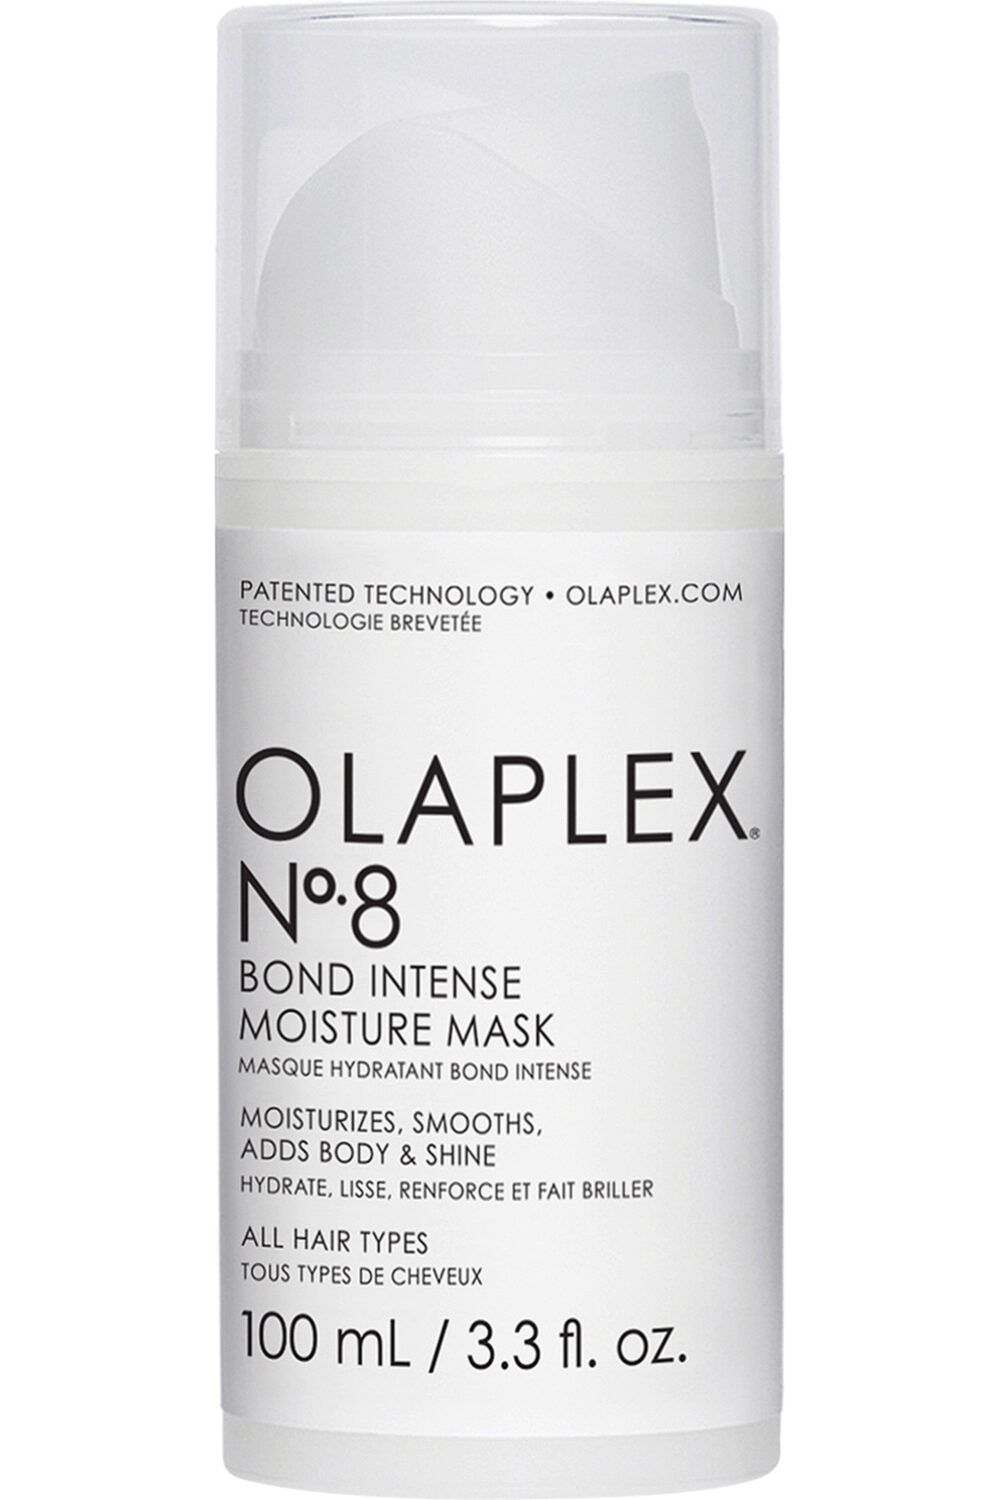 OLAPLEX - Masque hydratant intense n°8